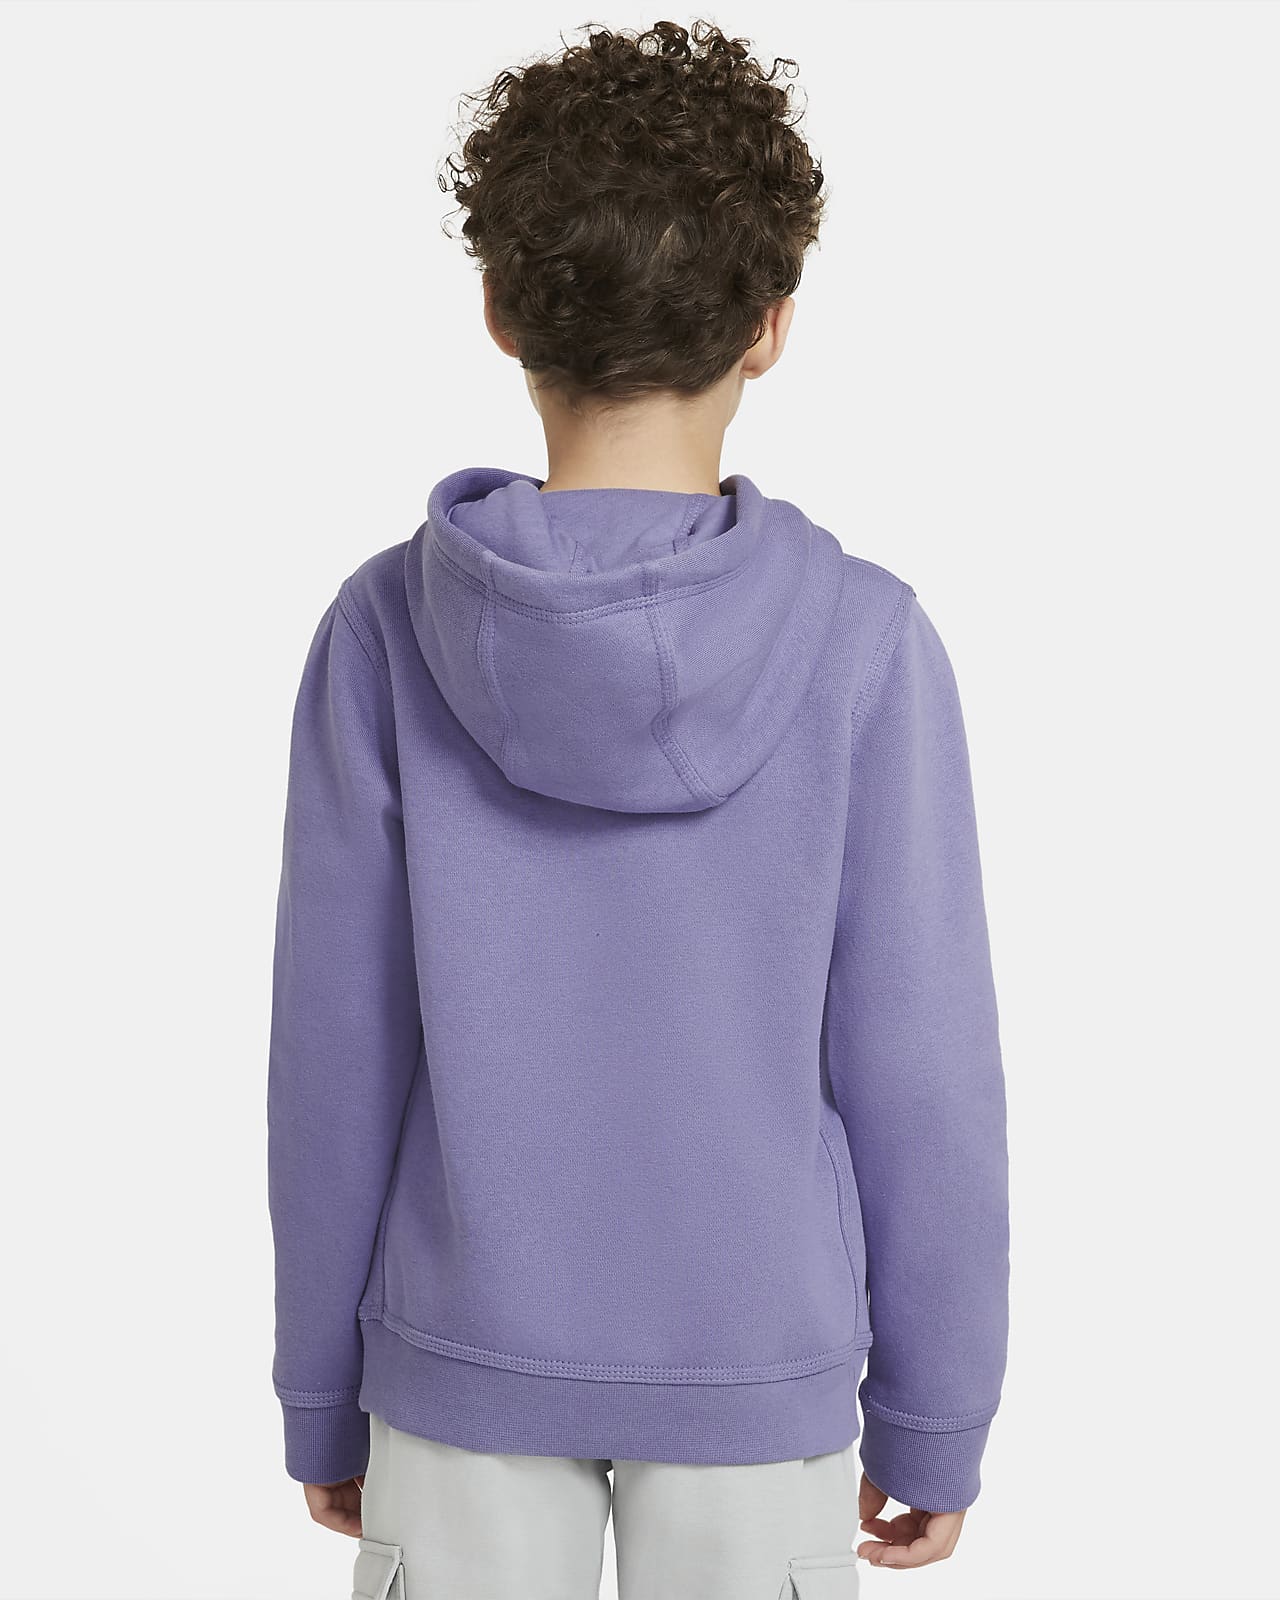 boys purple nike hoodie